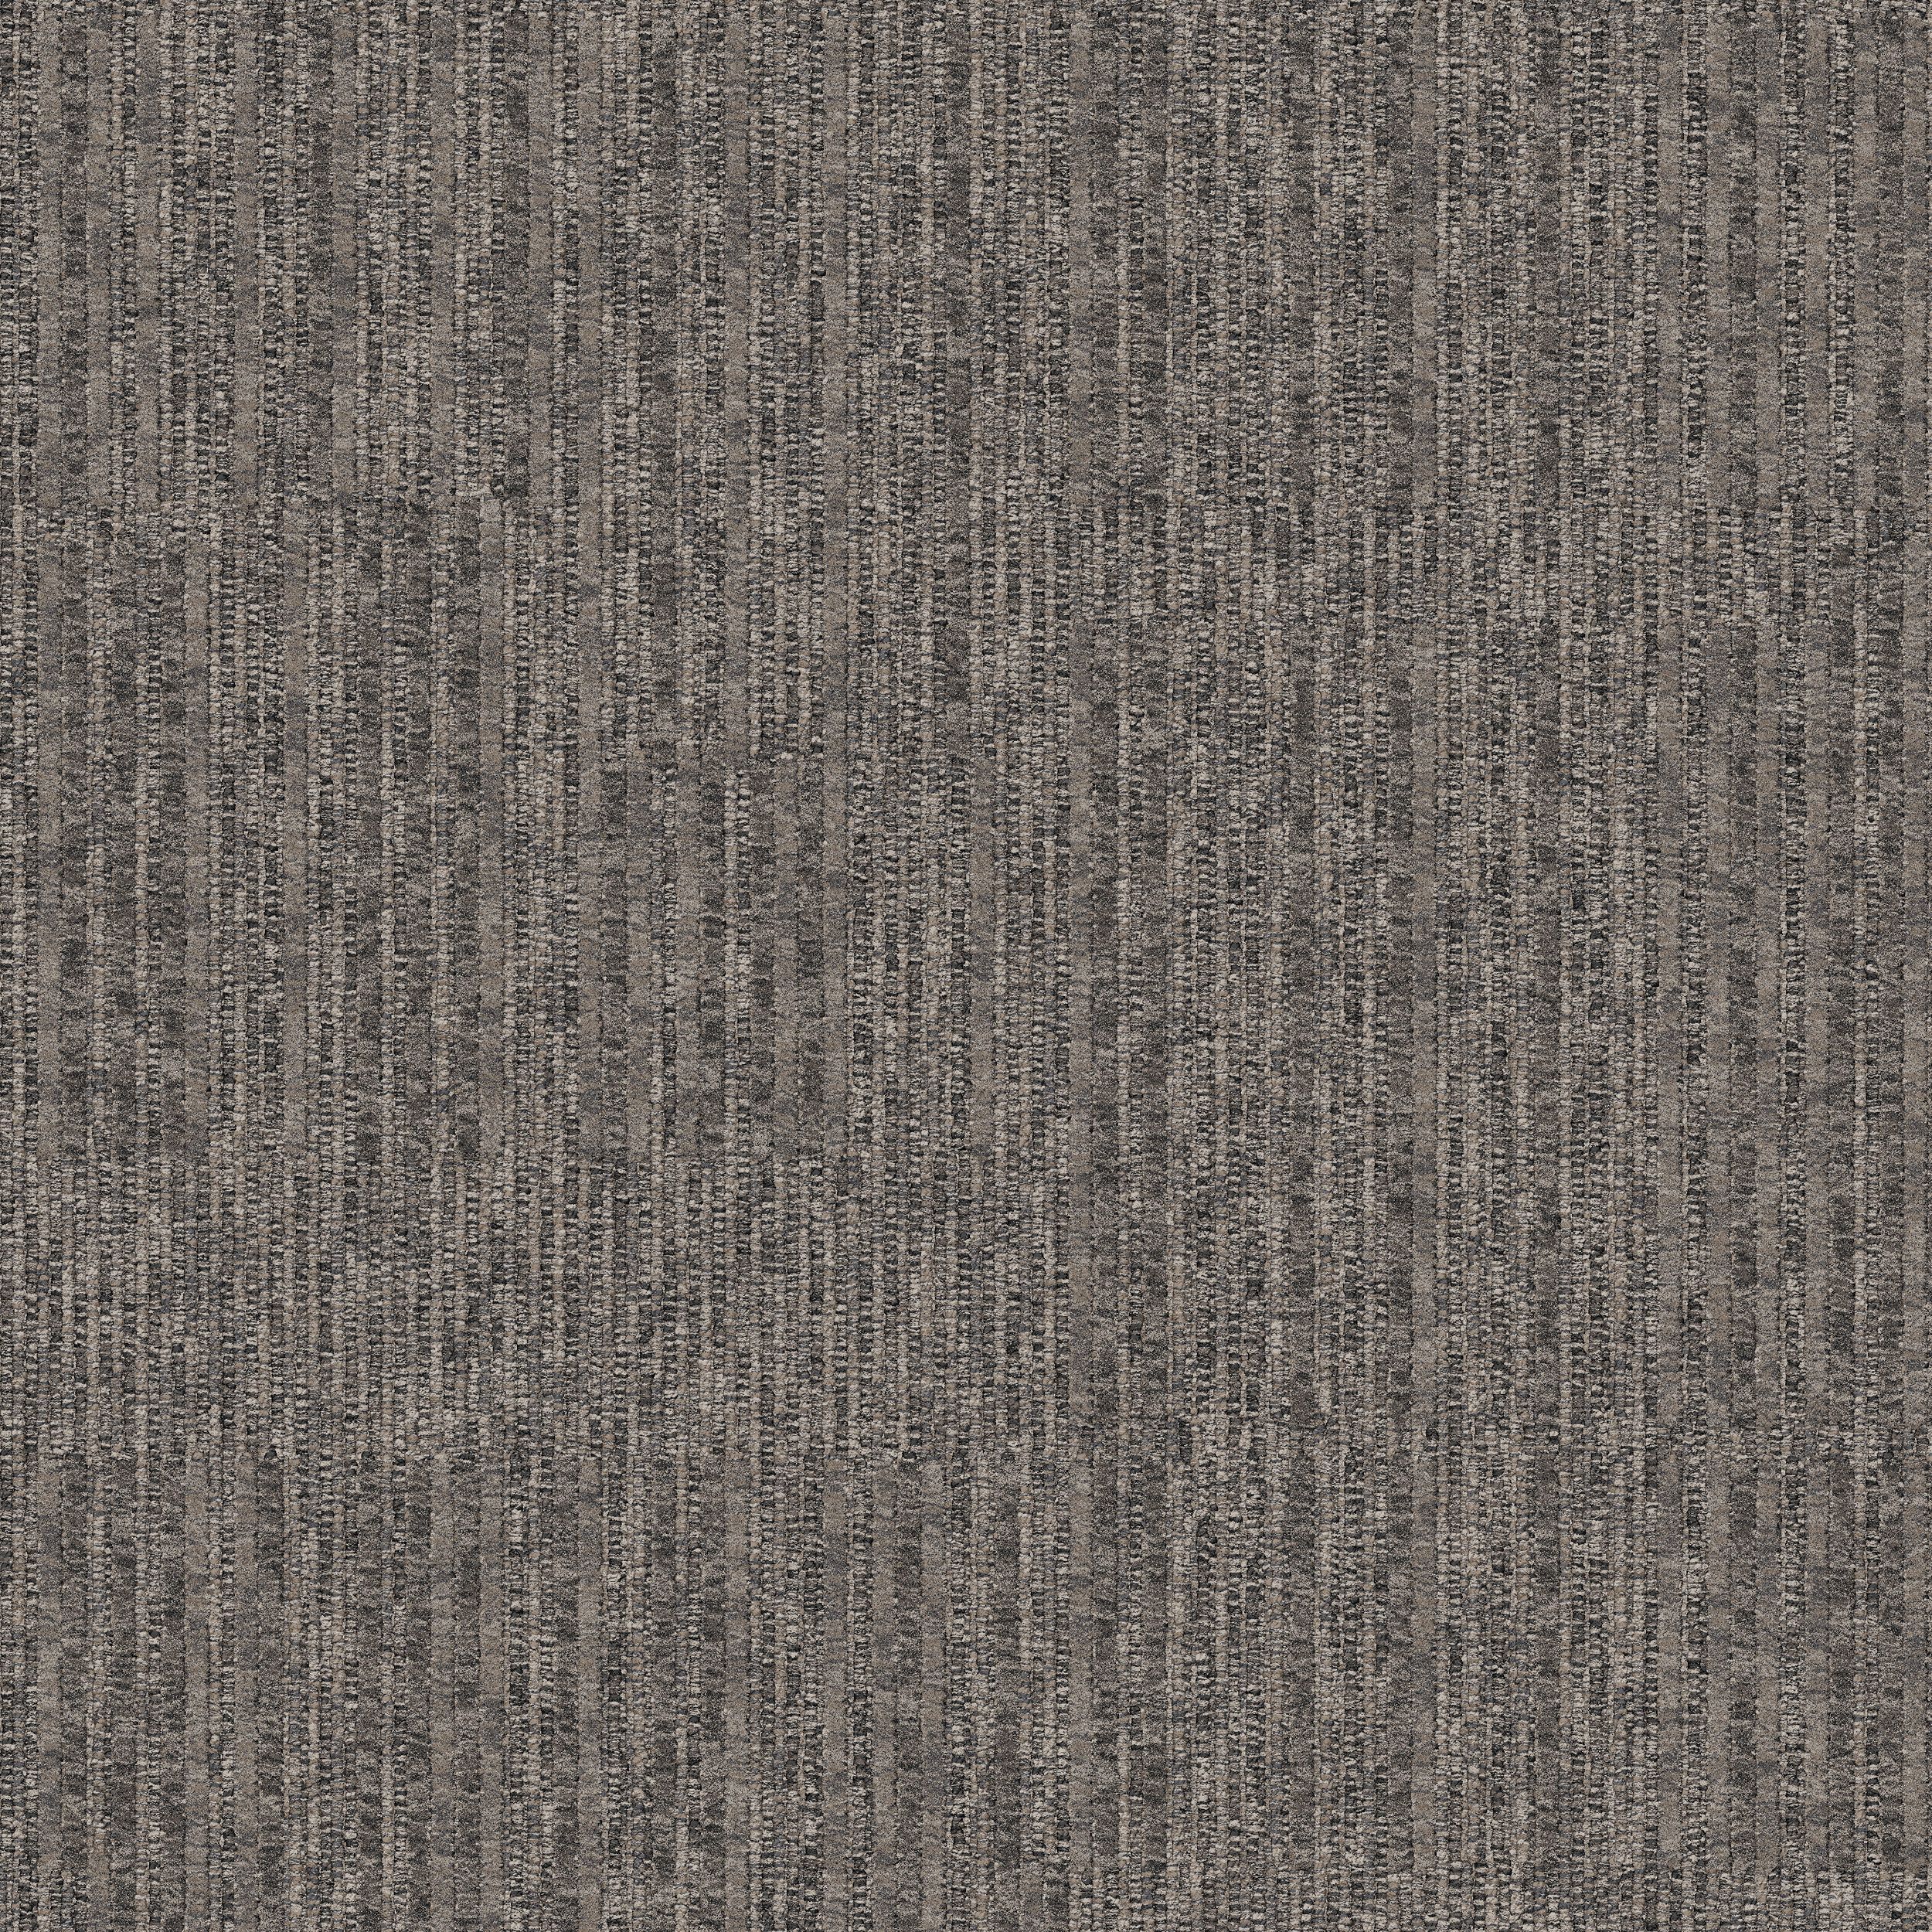 Equilibrium Carpet Tile In Persistence número de imagen 9